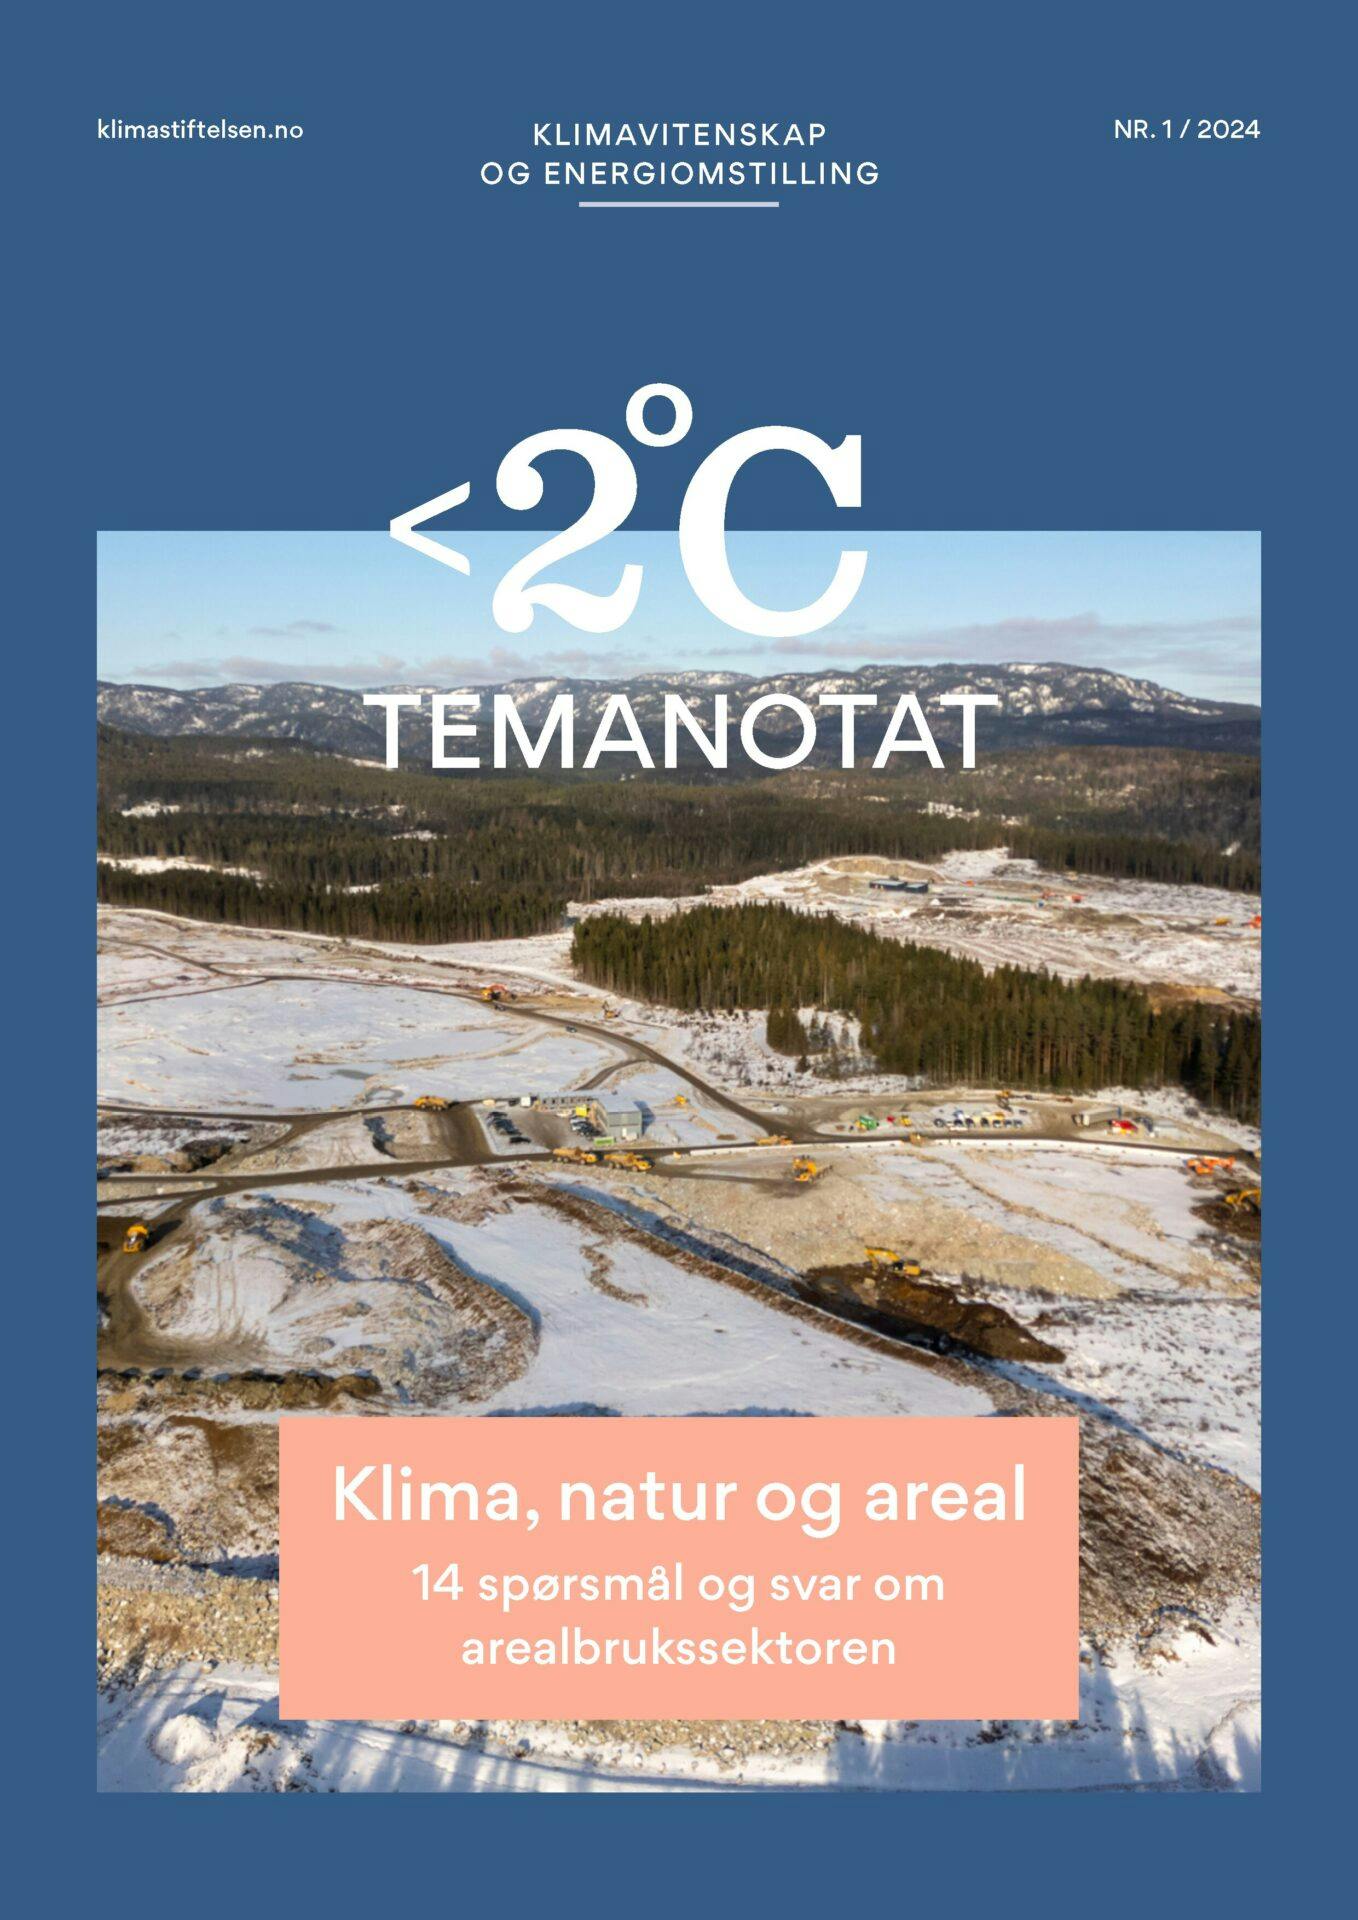 Luftfoto av et avskoget område med rester av snø, vist på forsiden av en klima- og energiomstillingsrapport.